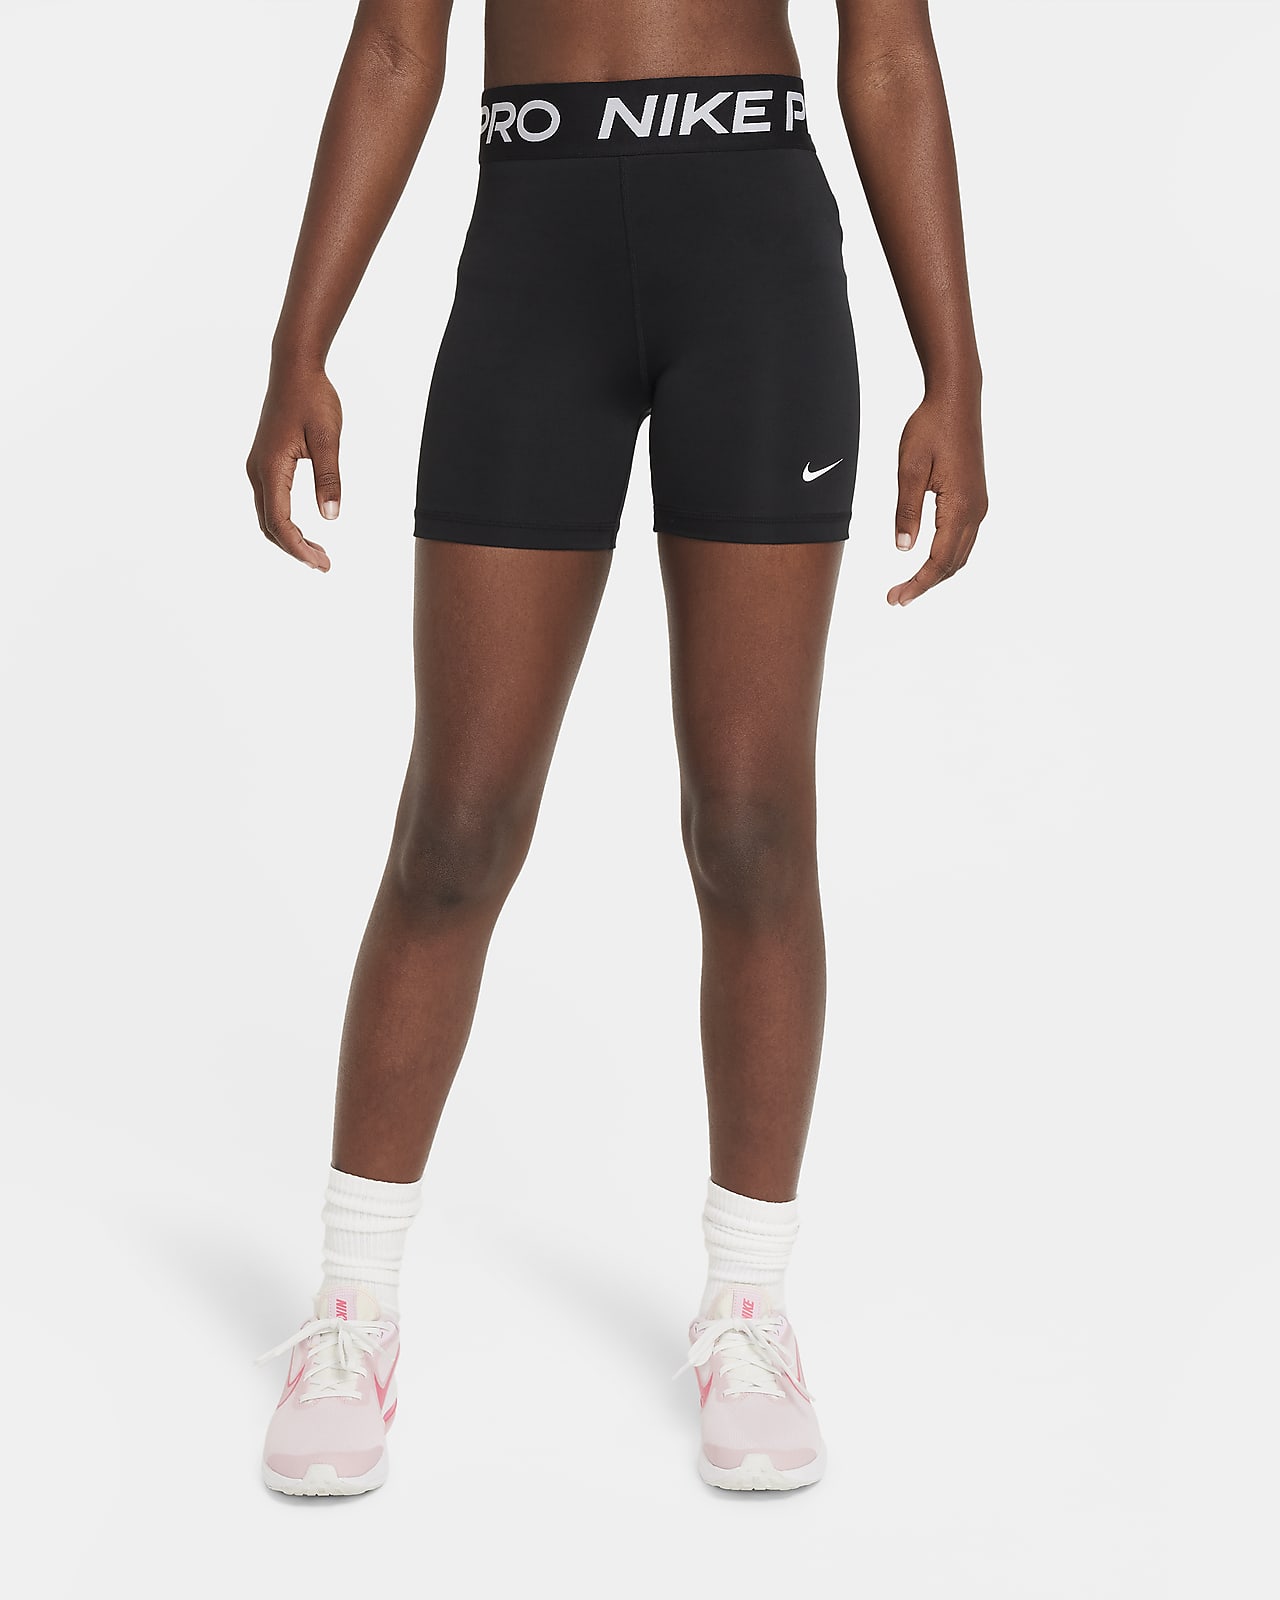 Shorts 8 cm Nike Pro - Ragazza